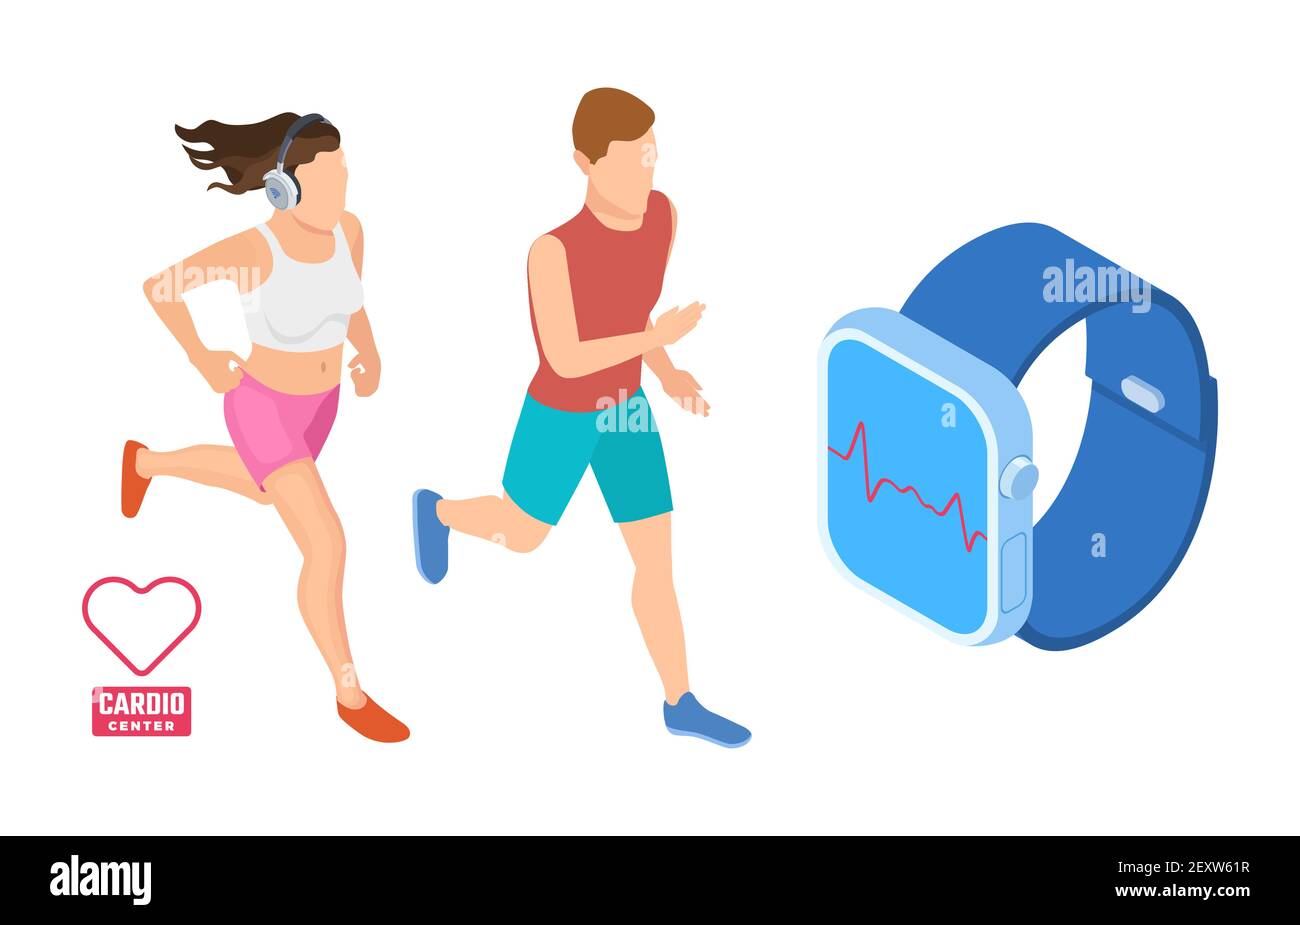 Cardio-Workout-Konzept. Isometrische Läufer überwachen die Herztätigkeit. Intelligente Fitness-Vektor-Illustration. Gesundheit App auf Gerät Gadget Smartwatch Stock Vektor